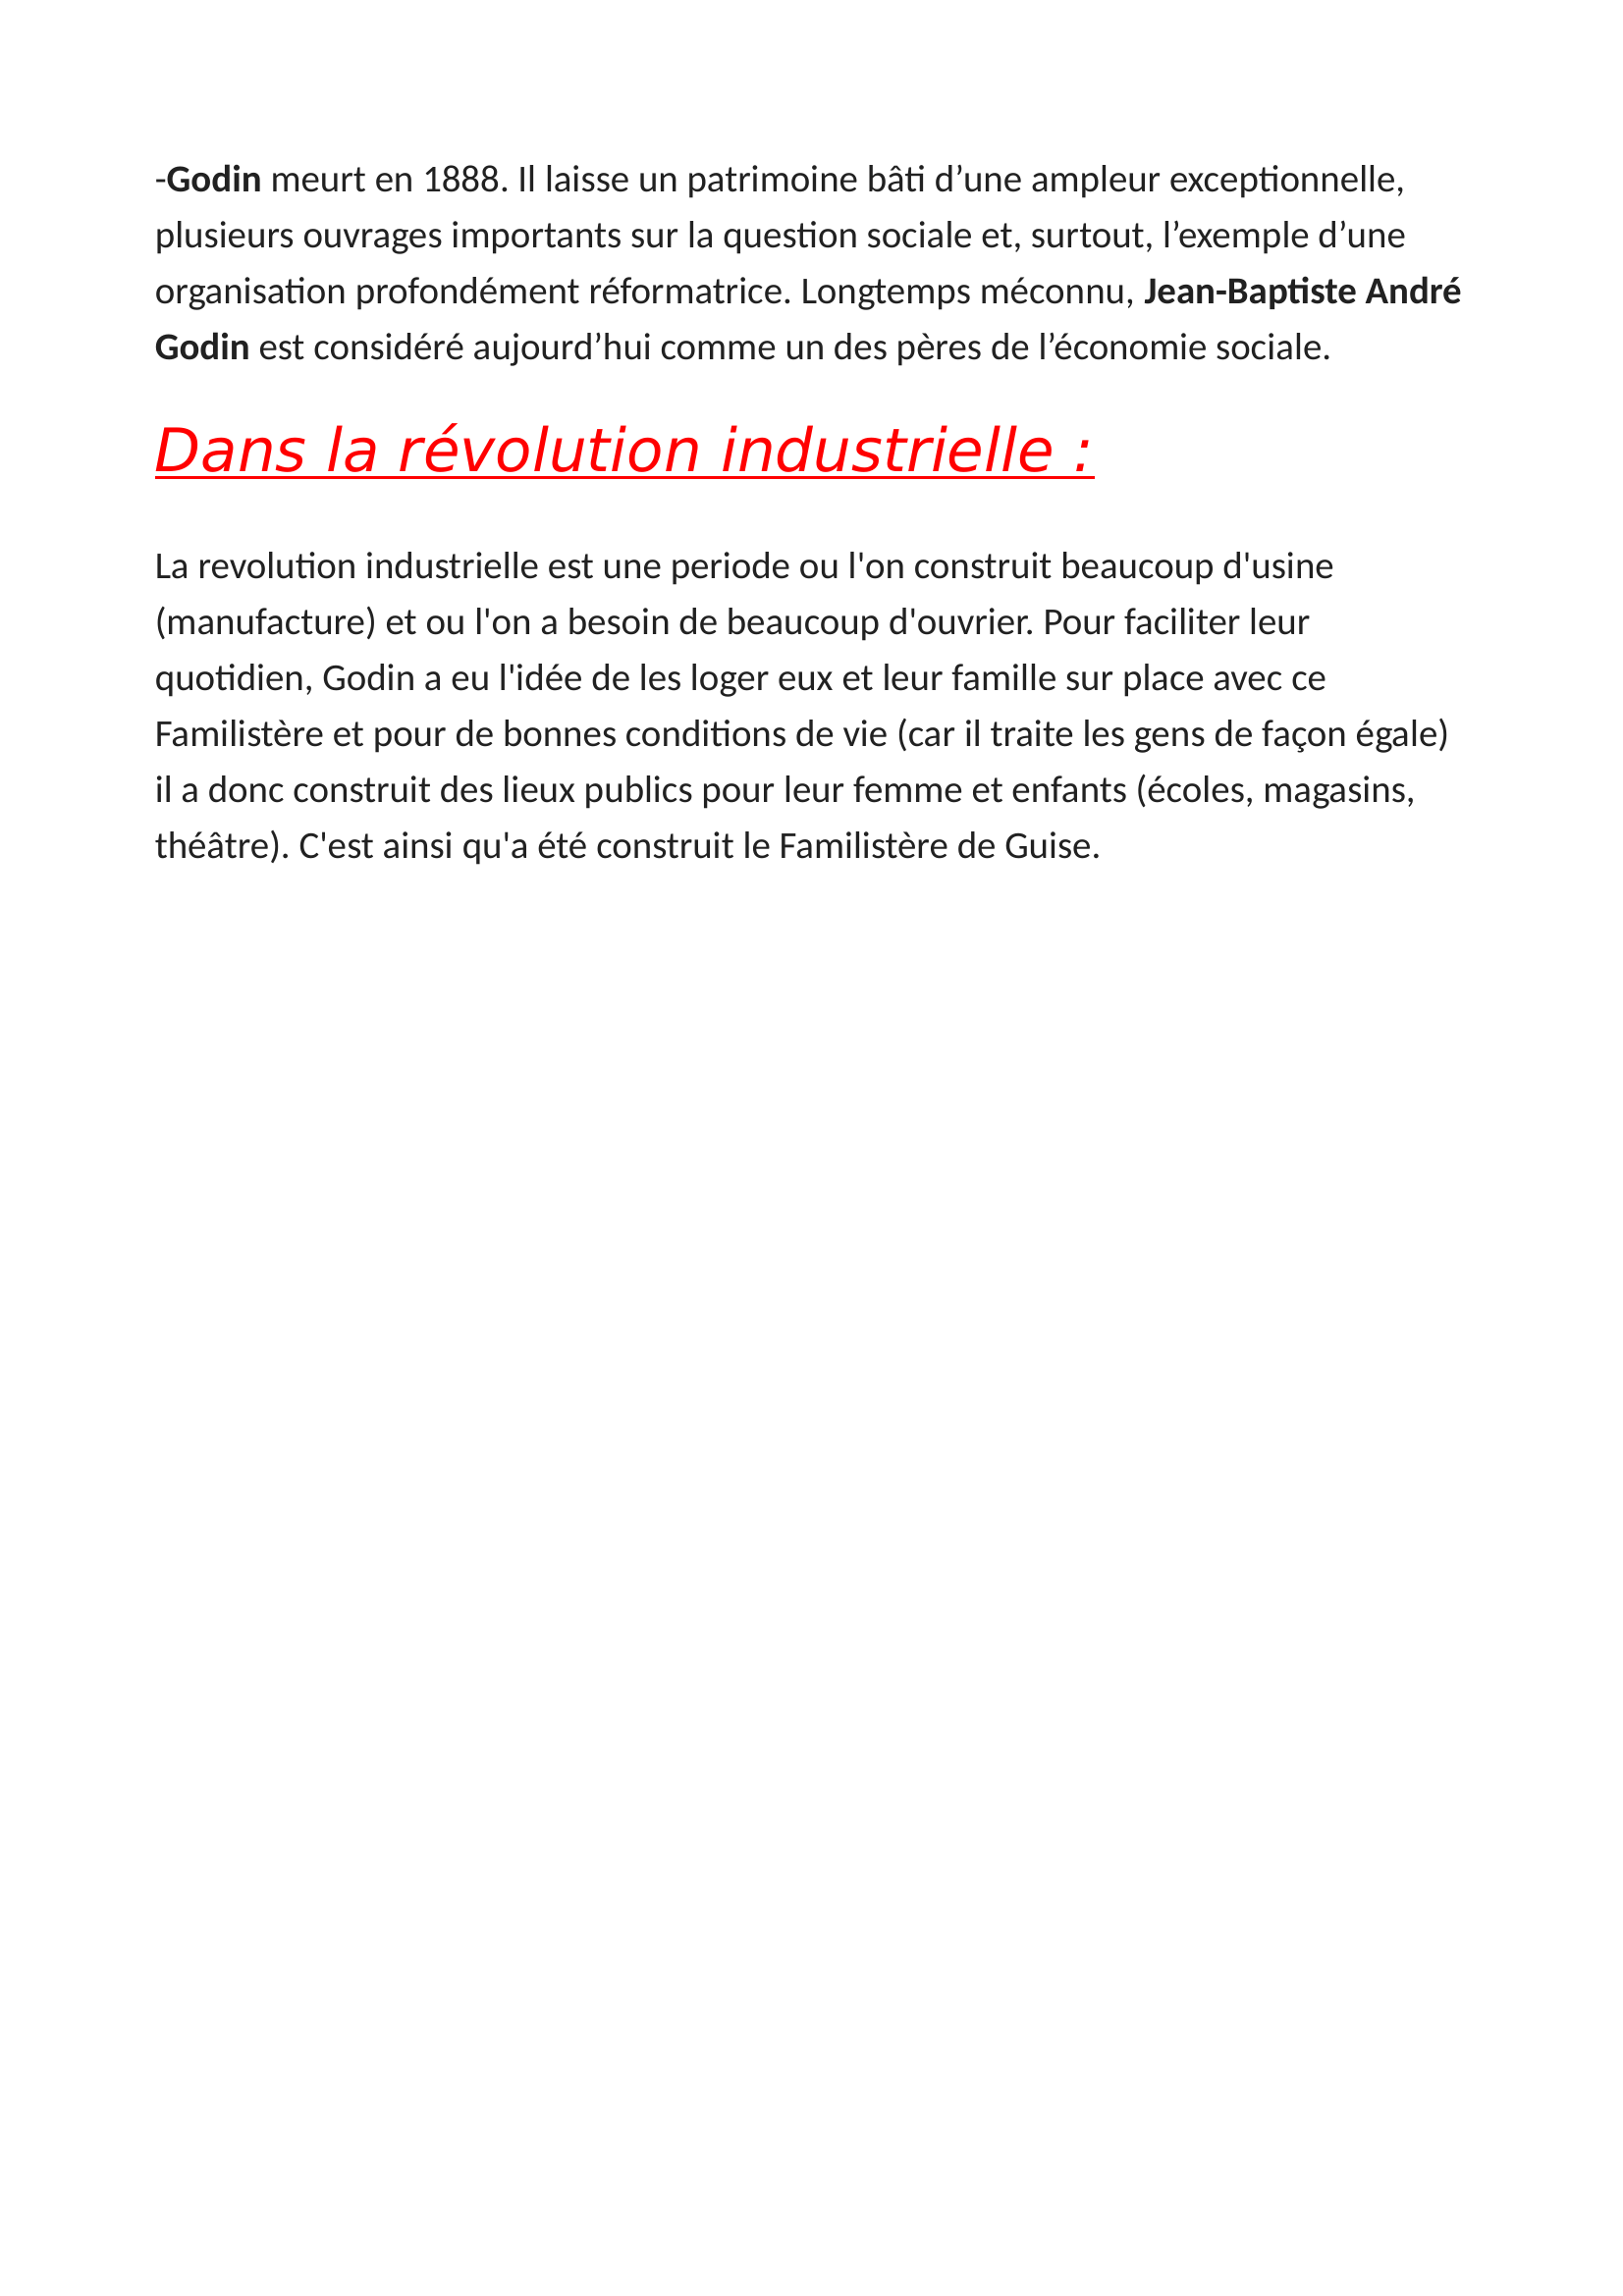 Prévisualisation du document La Révolution Industrielle :  
 
Le Familistère De Guise :  
 
-Créé par Jean-Batiste Godin en 1857, le familistère est une sorte de ville situé dans la ville de Guise.